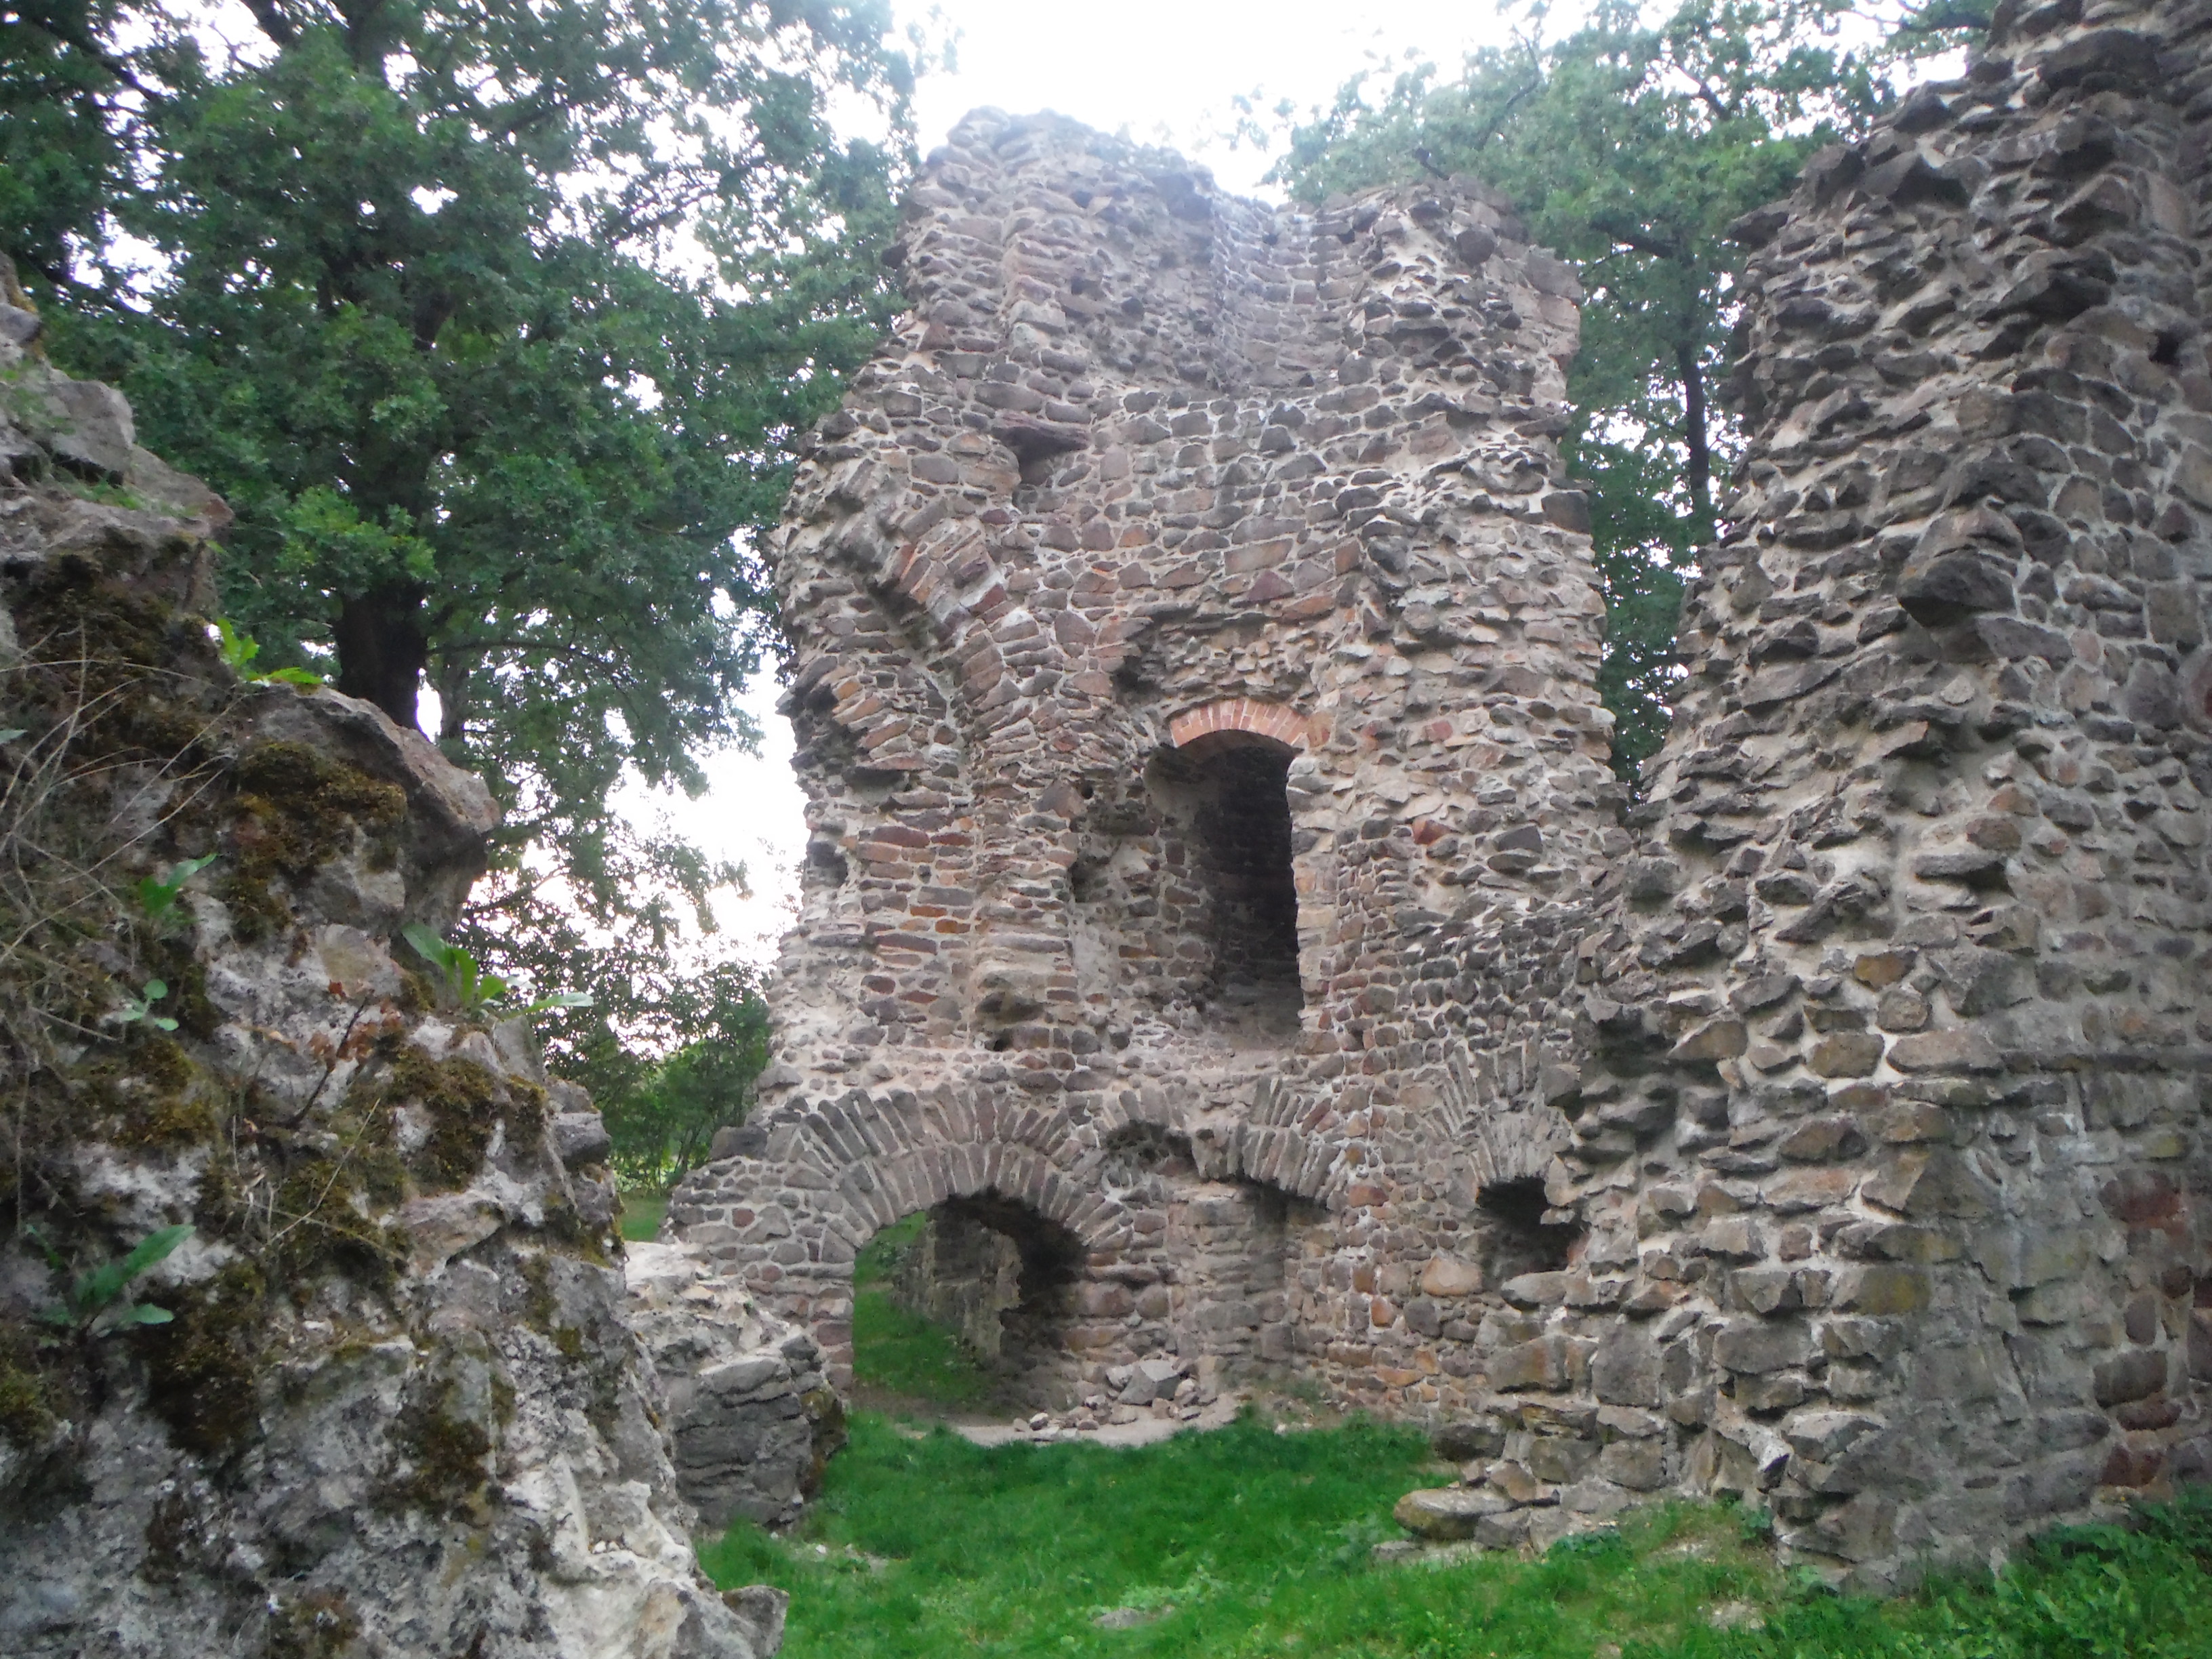 In der Mitte ist ein Teil einer Ruine mit Fenstern und einem kleinen Torbogen zu sehen, links und rechts befinden sich kleinere Mauerreste. Die Ruine ist von Gras und Bäumen umgeben.